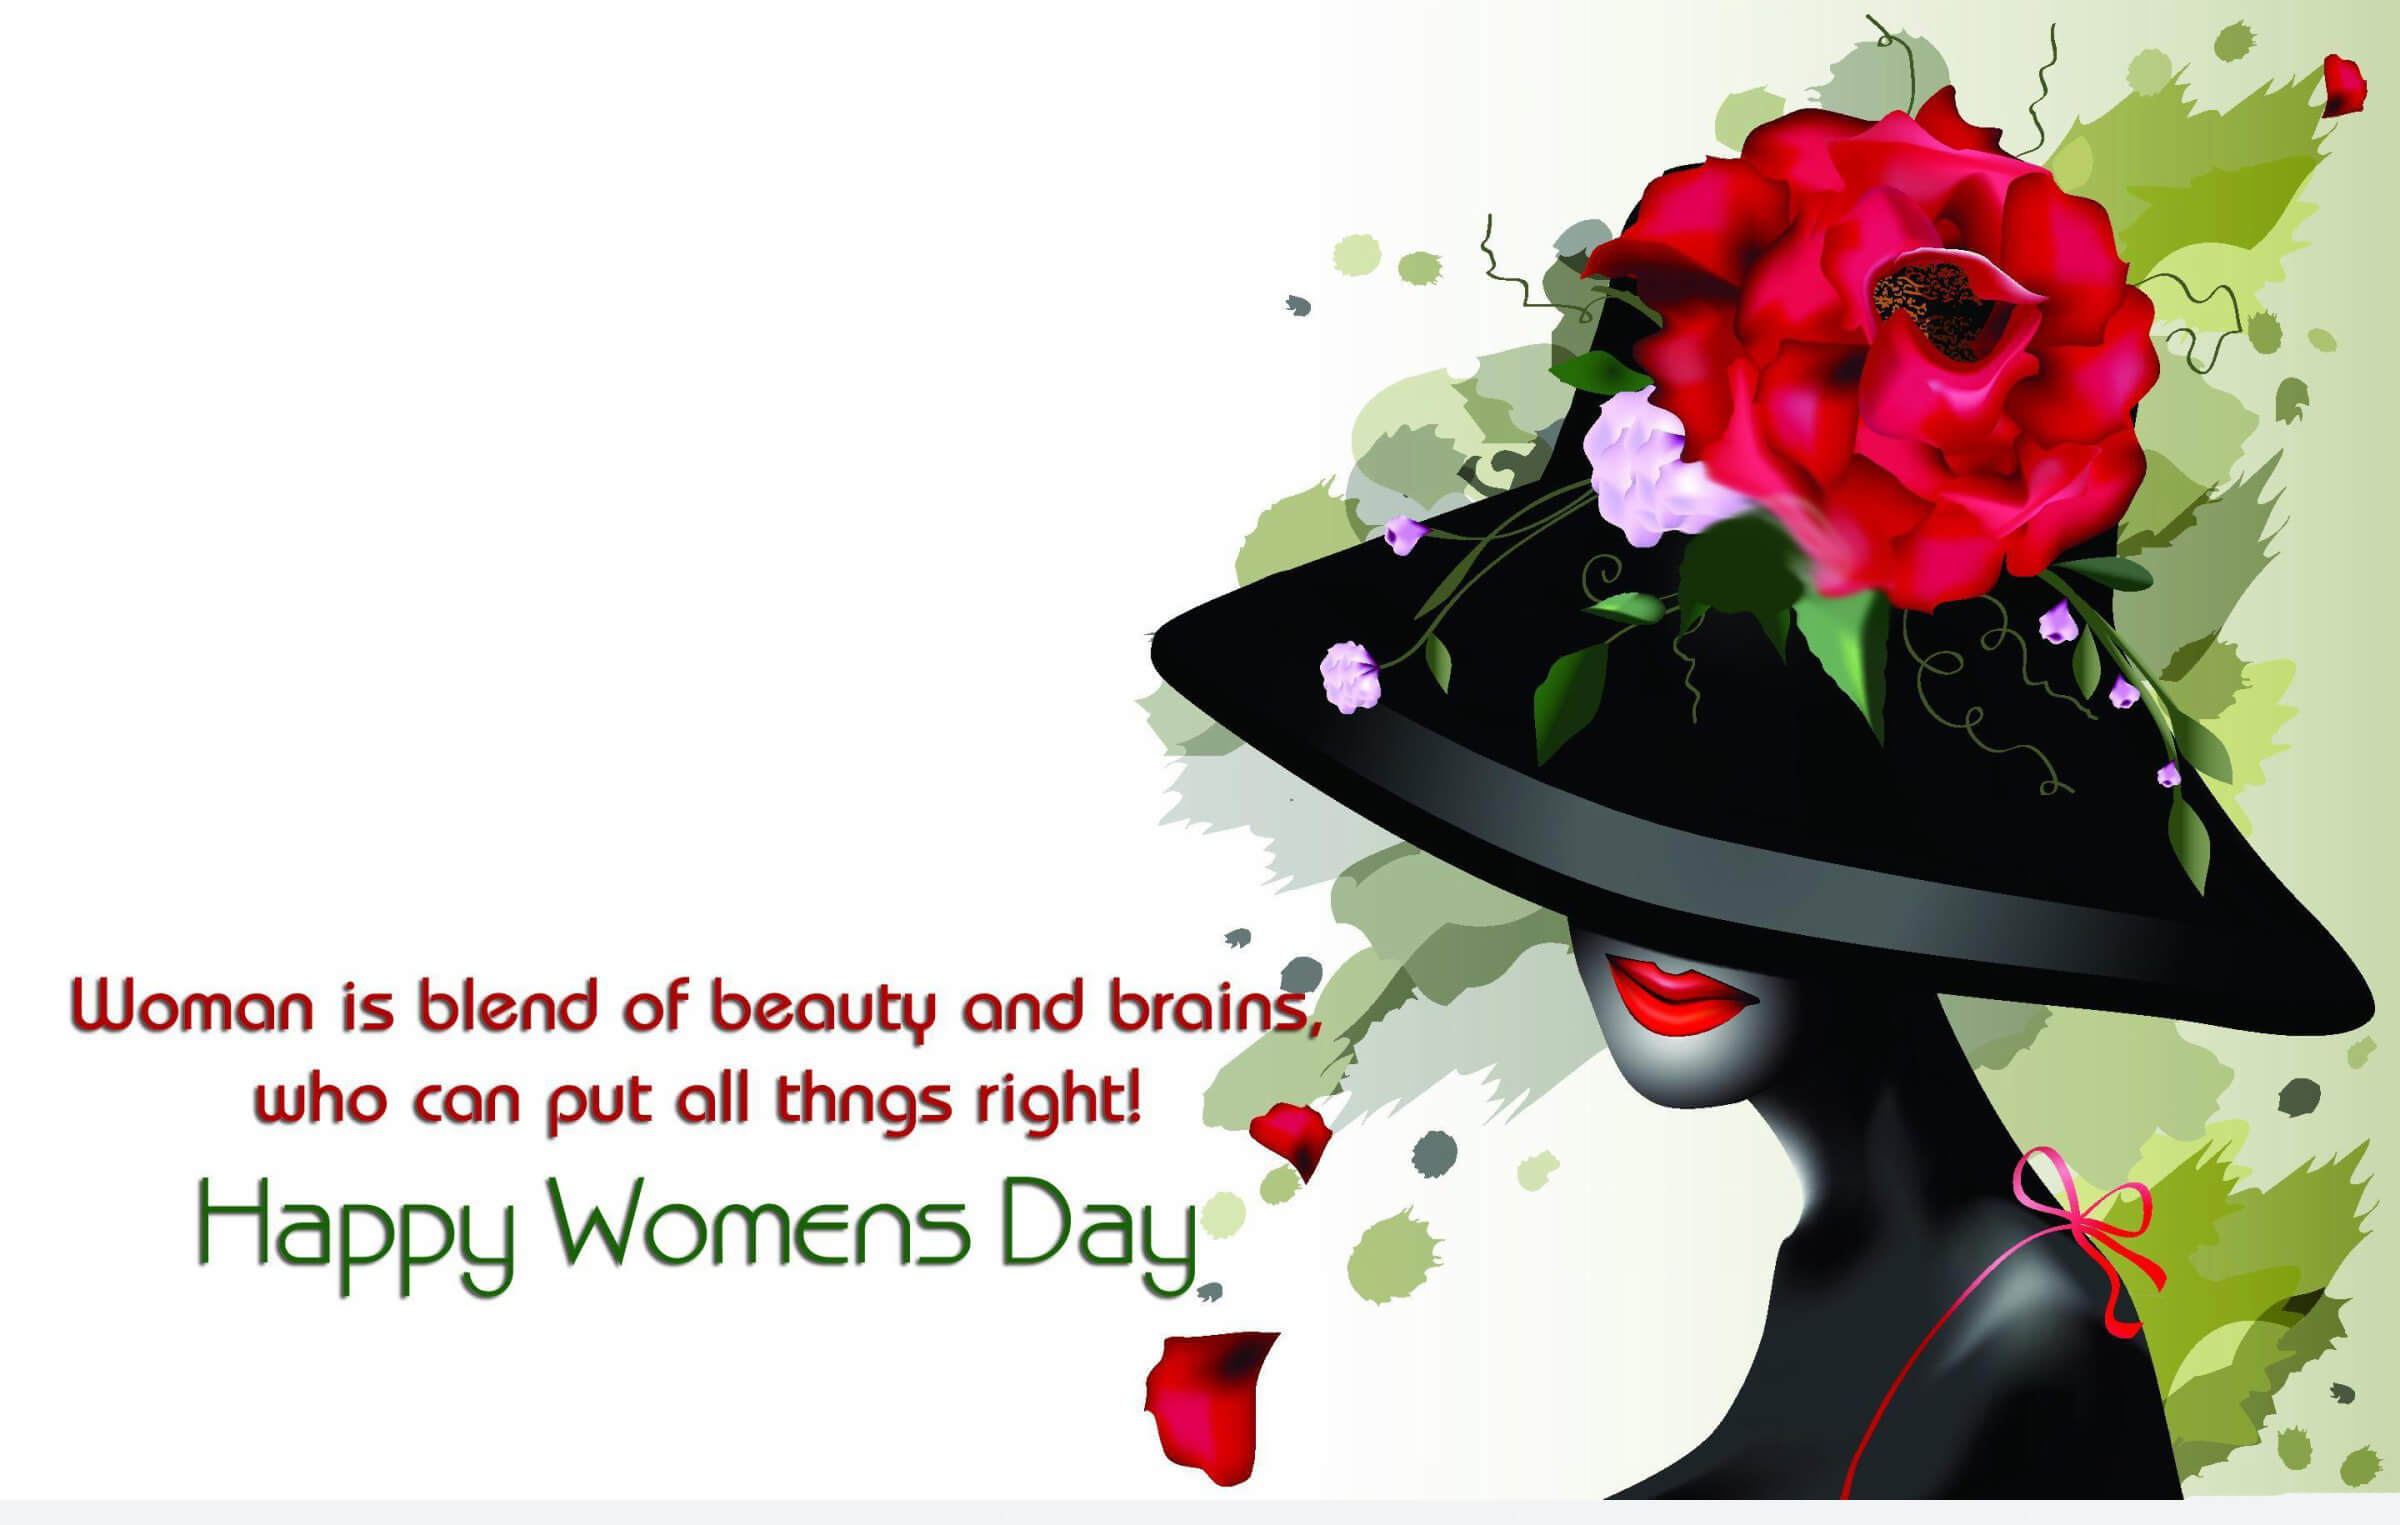 carta da parati per il giorno delle donne,illustrazione,petalo,fiore,pianta,disegno grafico